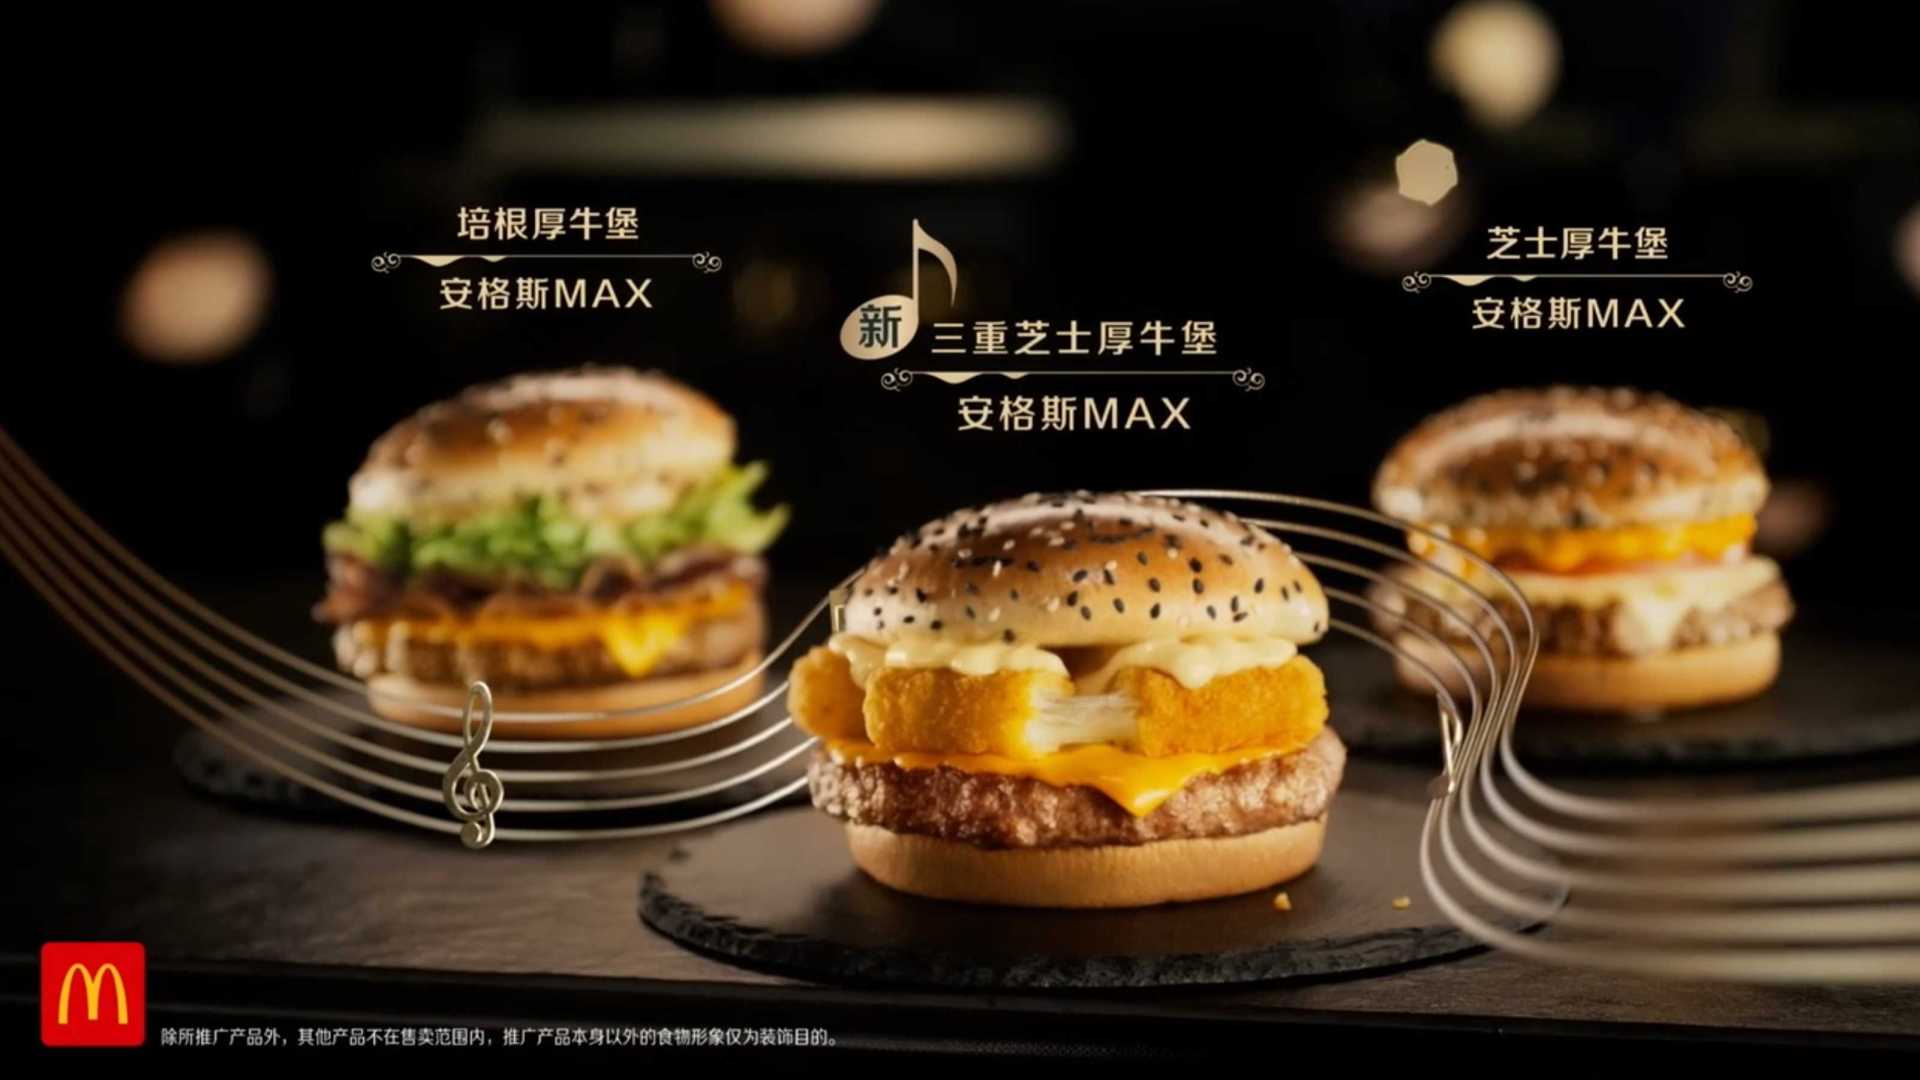 麦当劳 - 广告 - 苏炳添